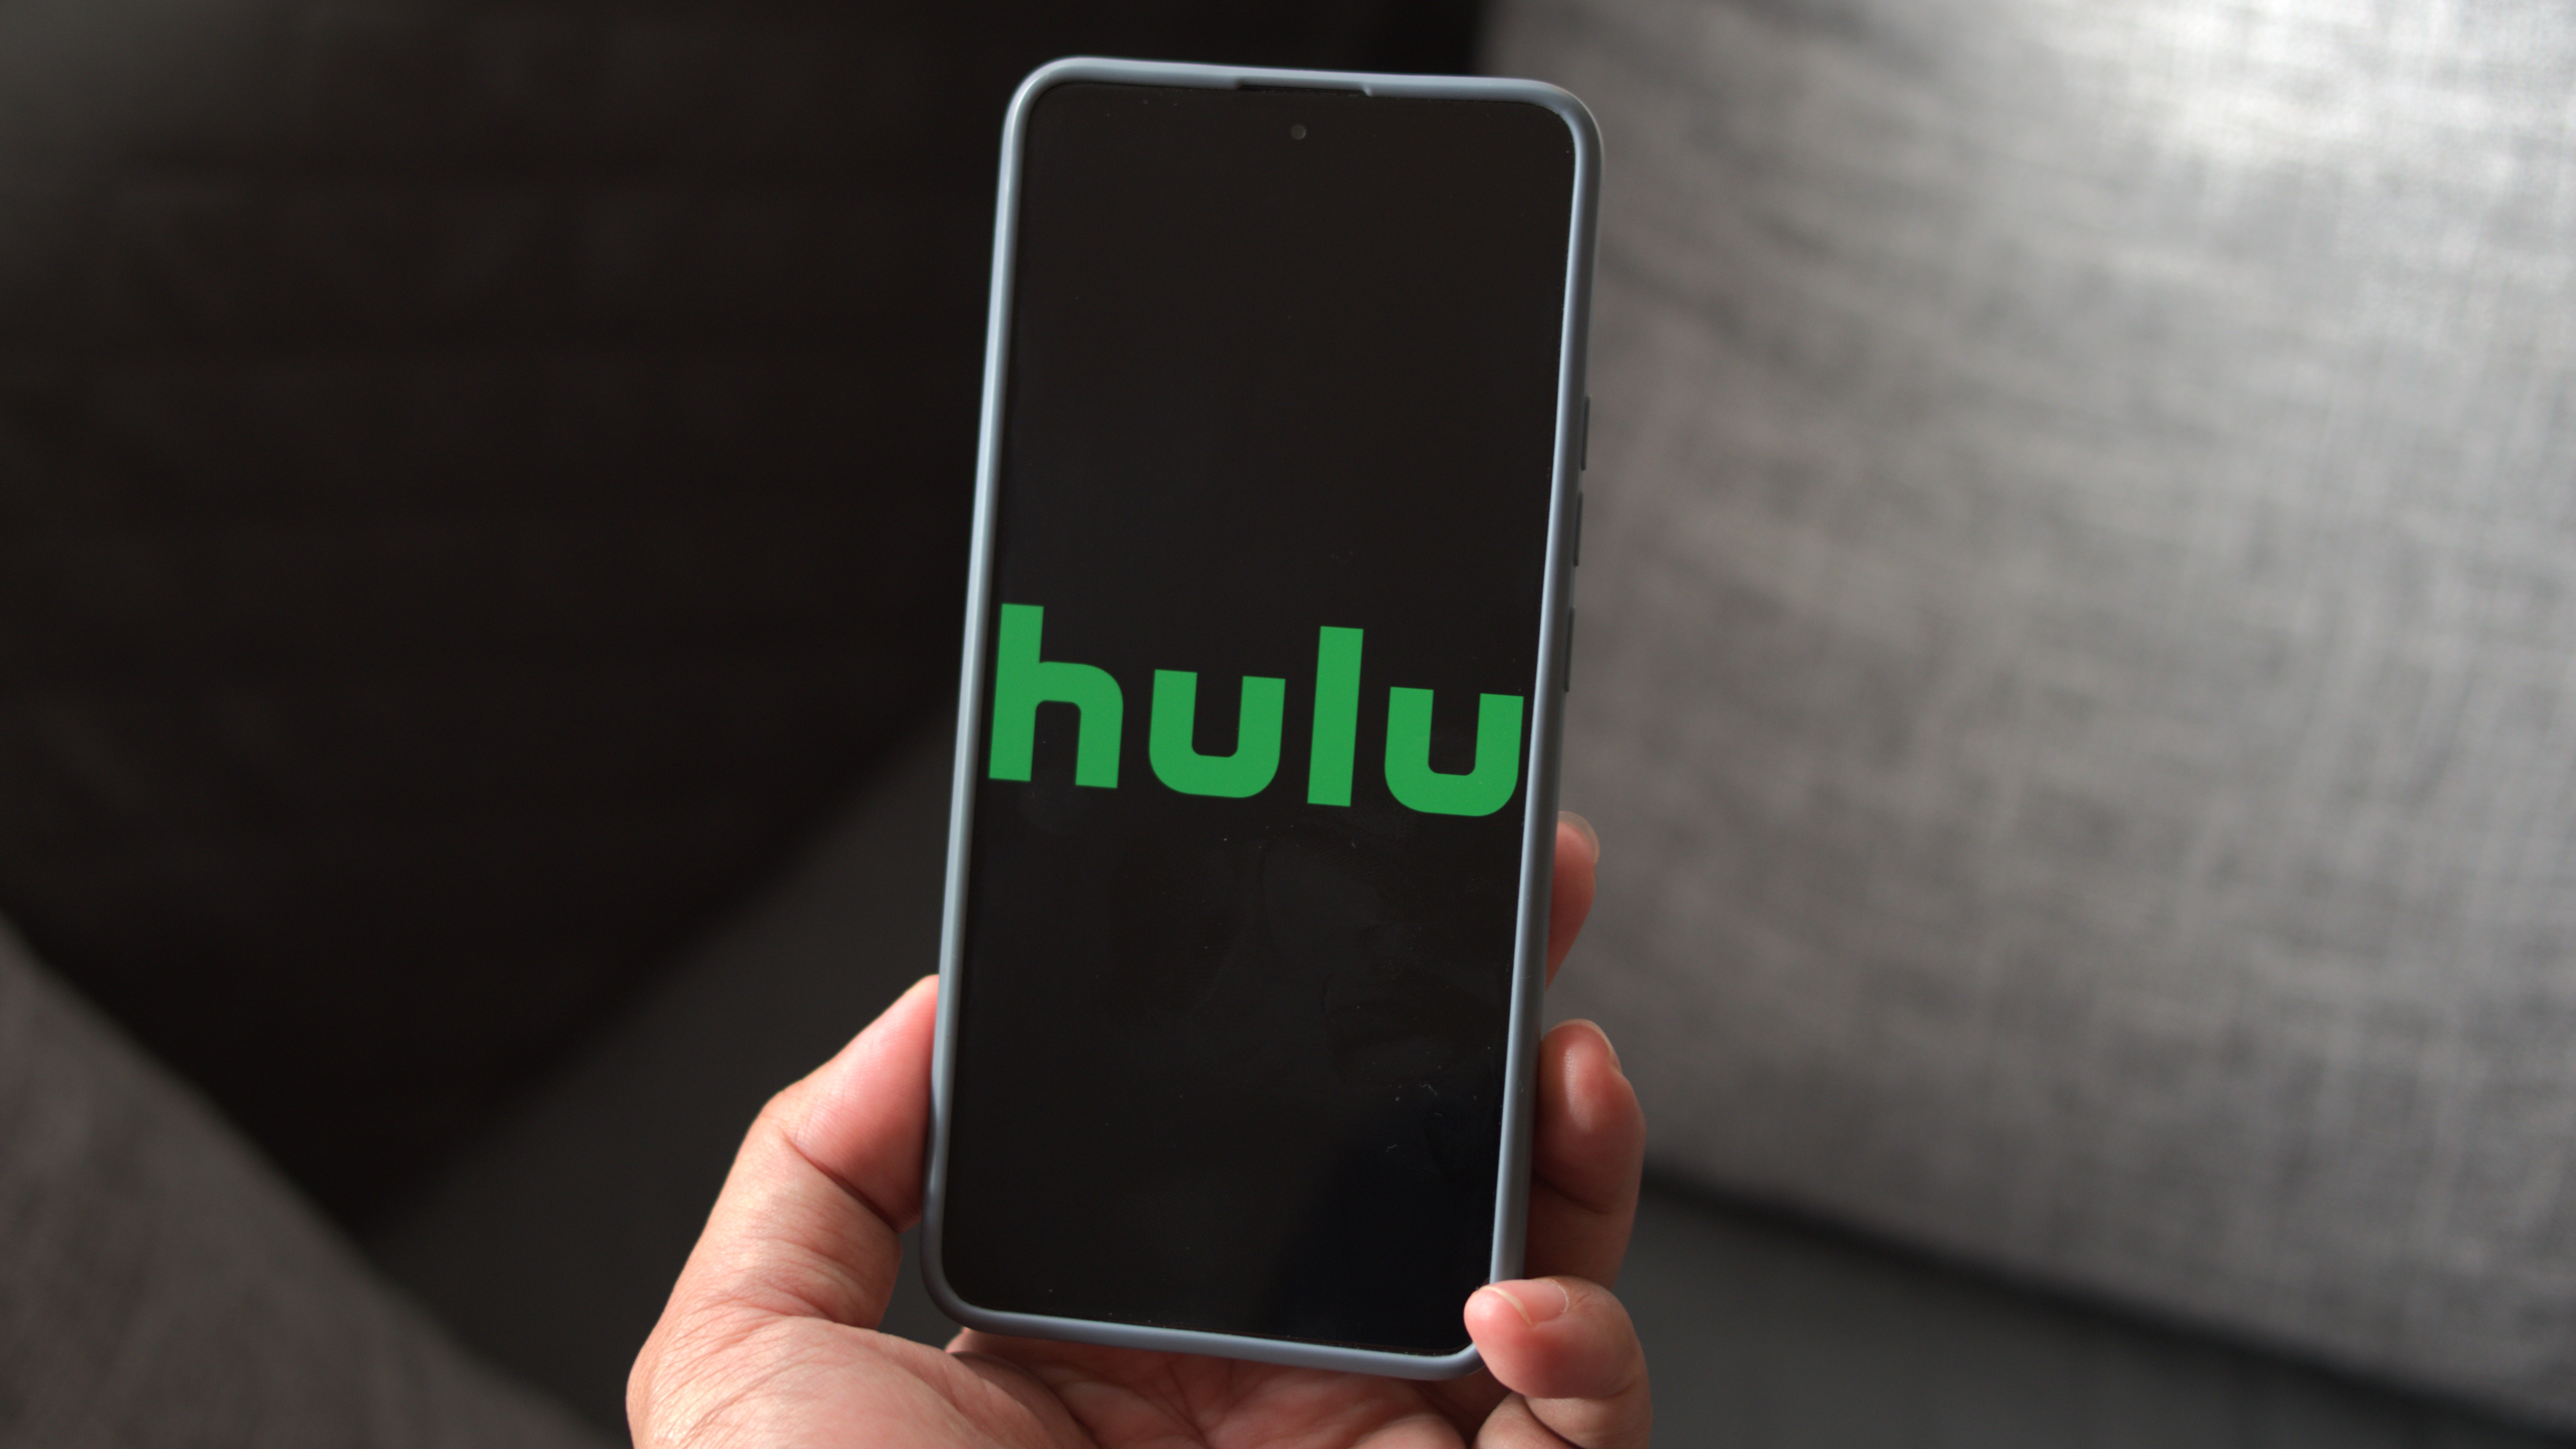 Hulu logo on a phone screen